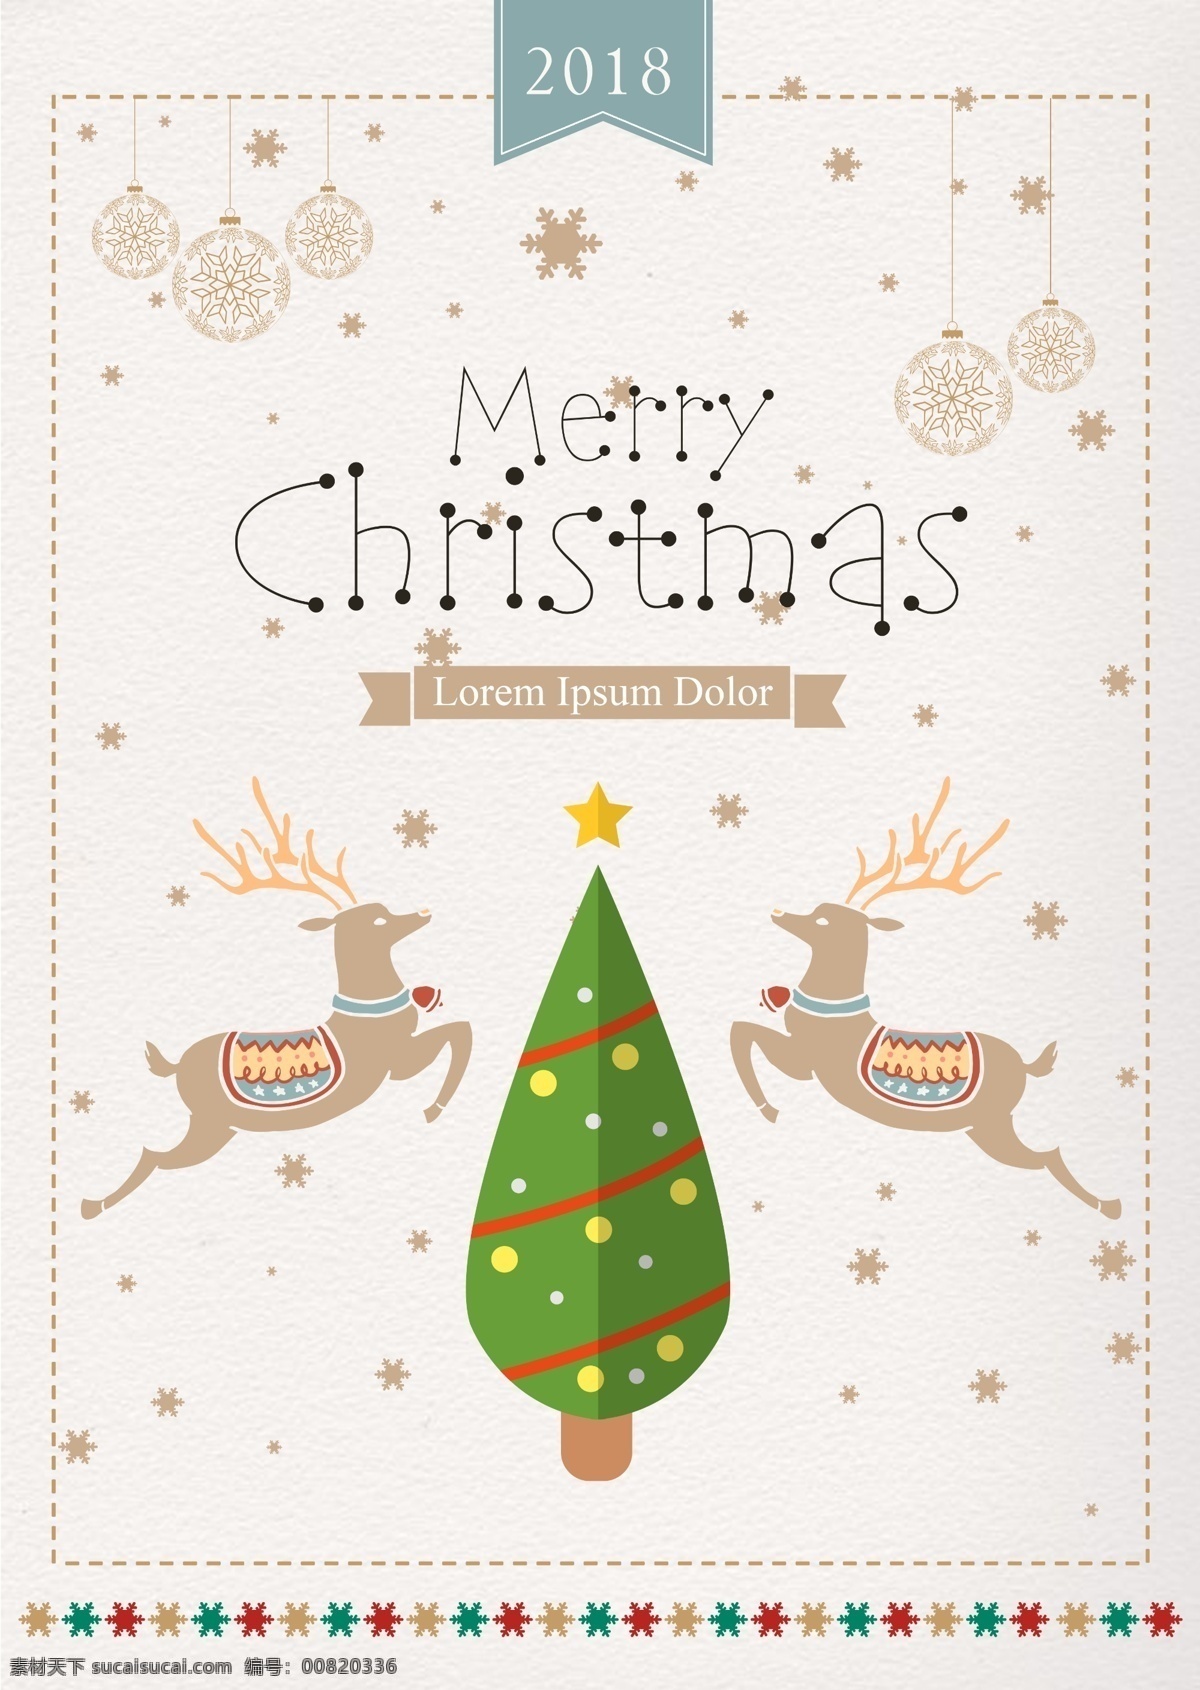 圣诞快乐 2018 年 xie 海报 肝脏药物 祝你圣诞快乐 钟 鹿 谢和 五角星 圣诞 在平安夜 圣诞树 模板 移动支付 圣诞节